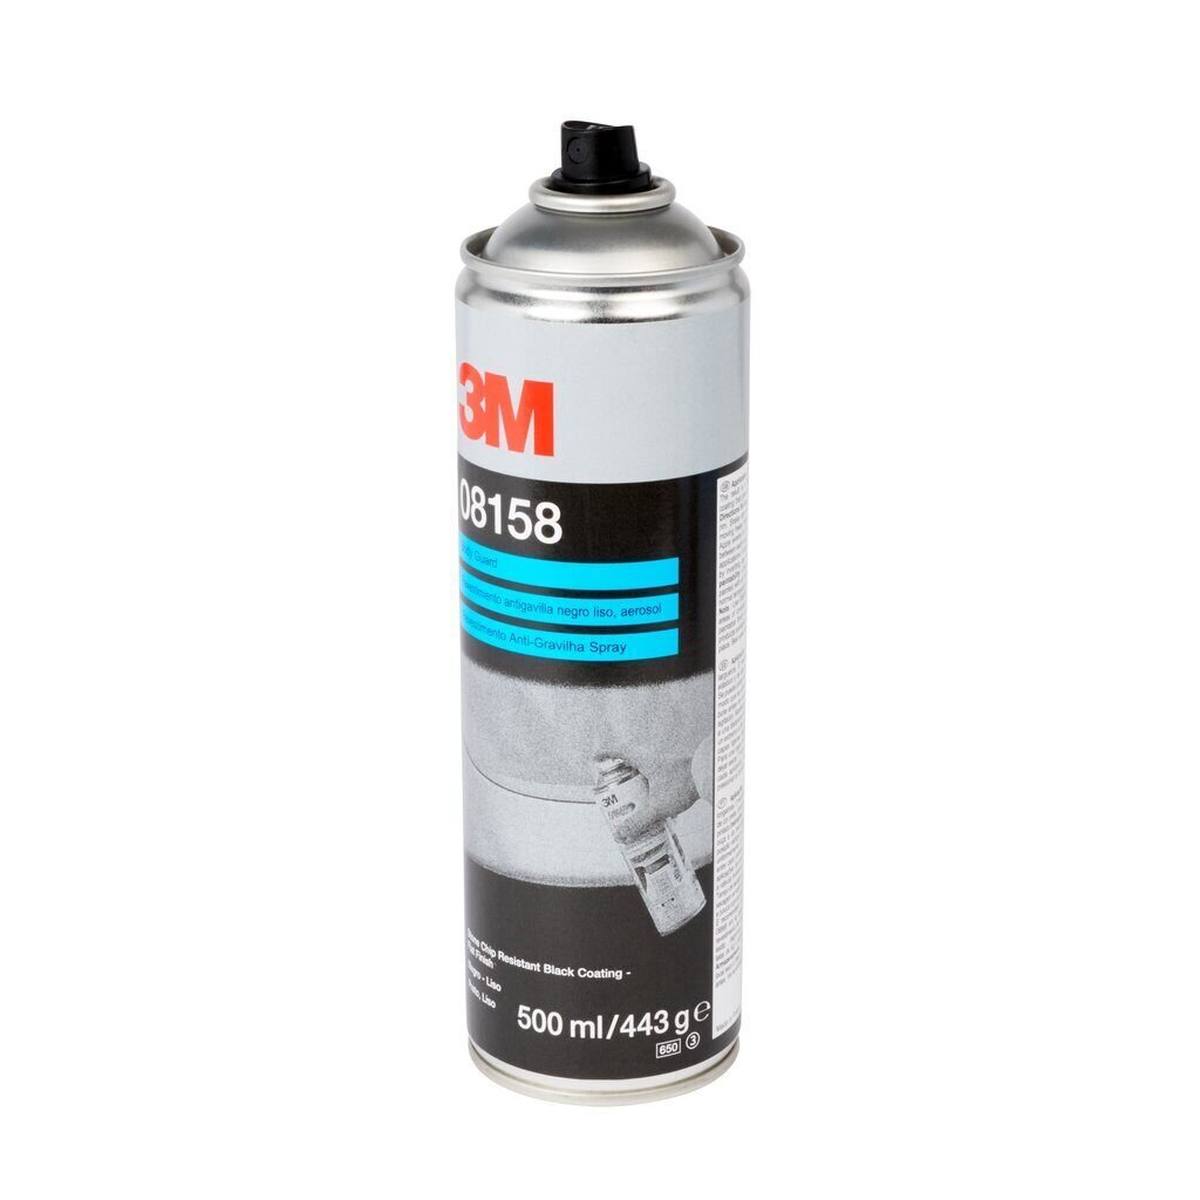 3M spray protettivo contro le schegge di pietra / con struttura piatta, nero, 500 ml #08158